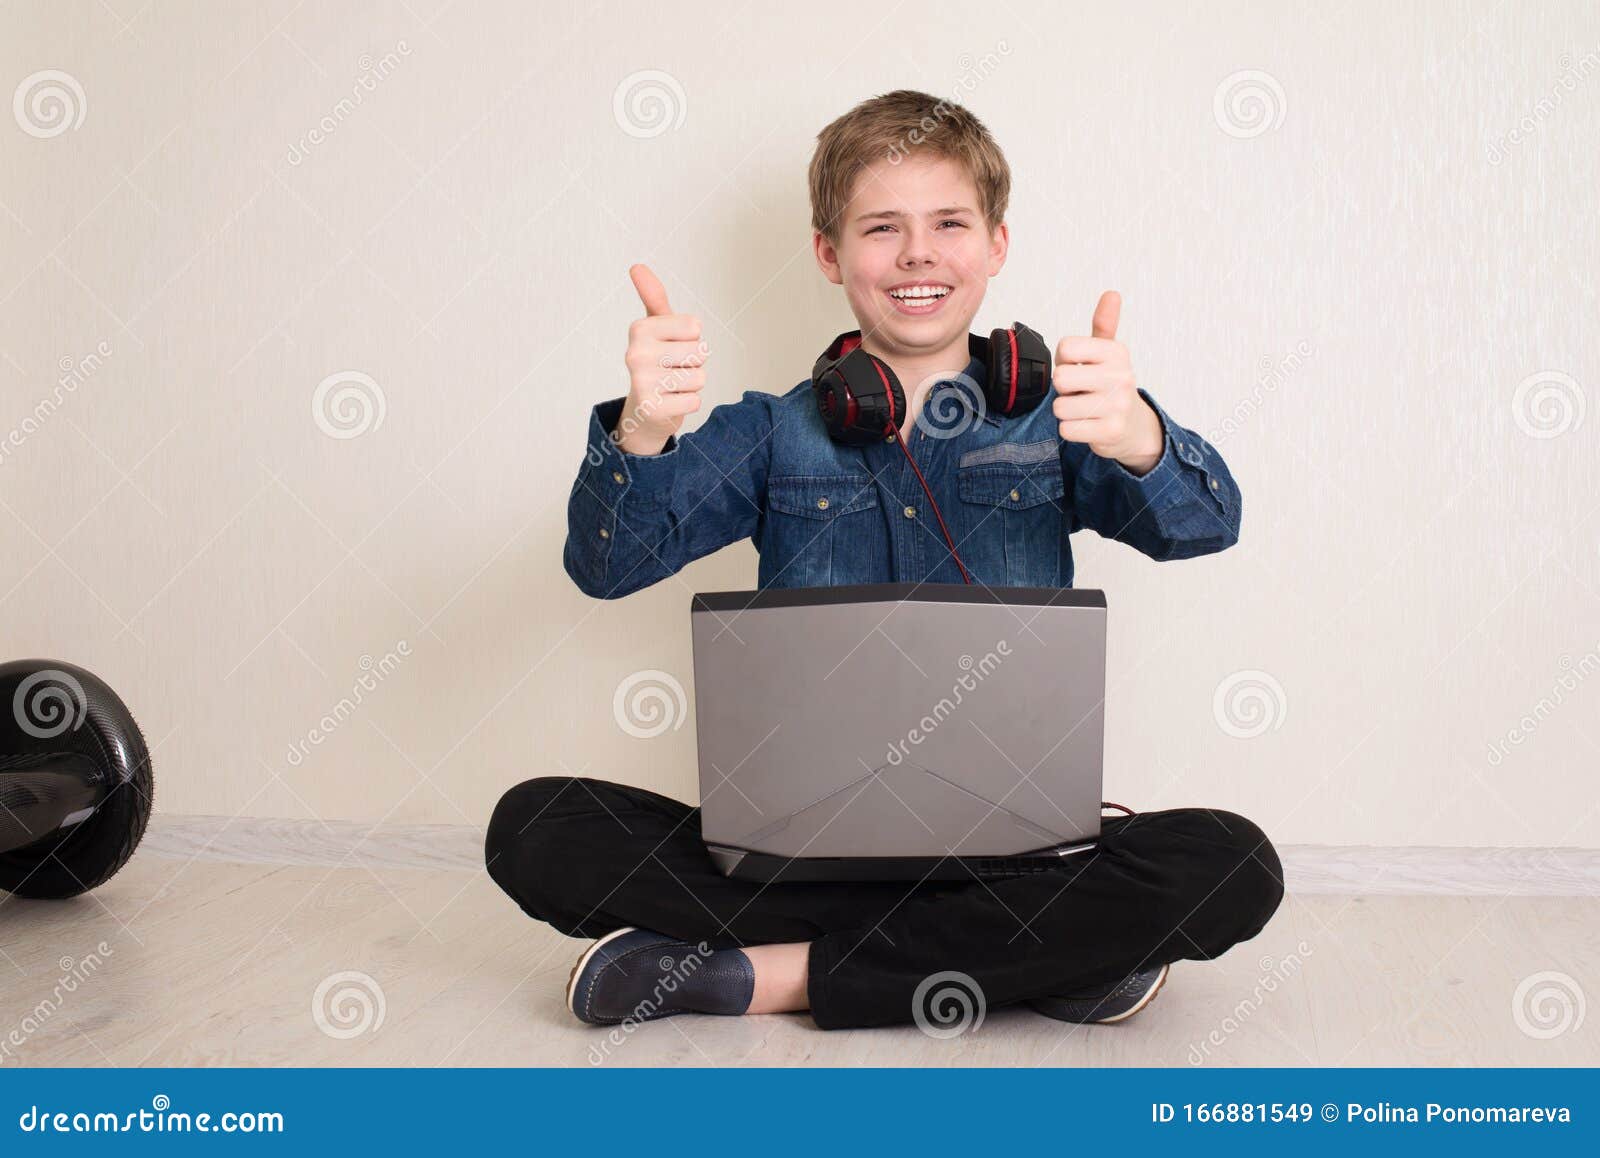 Happy Teenager Junge mit Laptop-Computer und Kopfhörer mit Daumen auf der Geste, während er auf dem Boden sitzt, die Beine gekreuzt